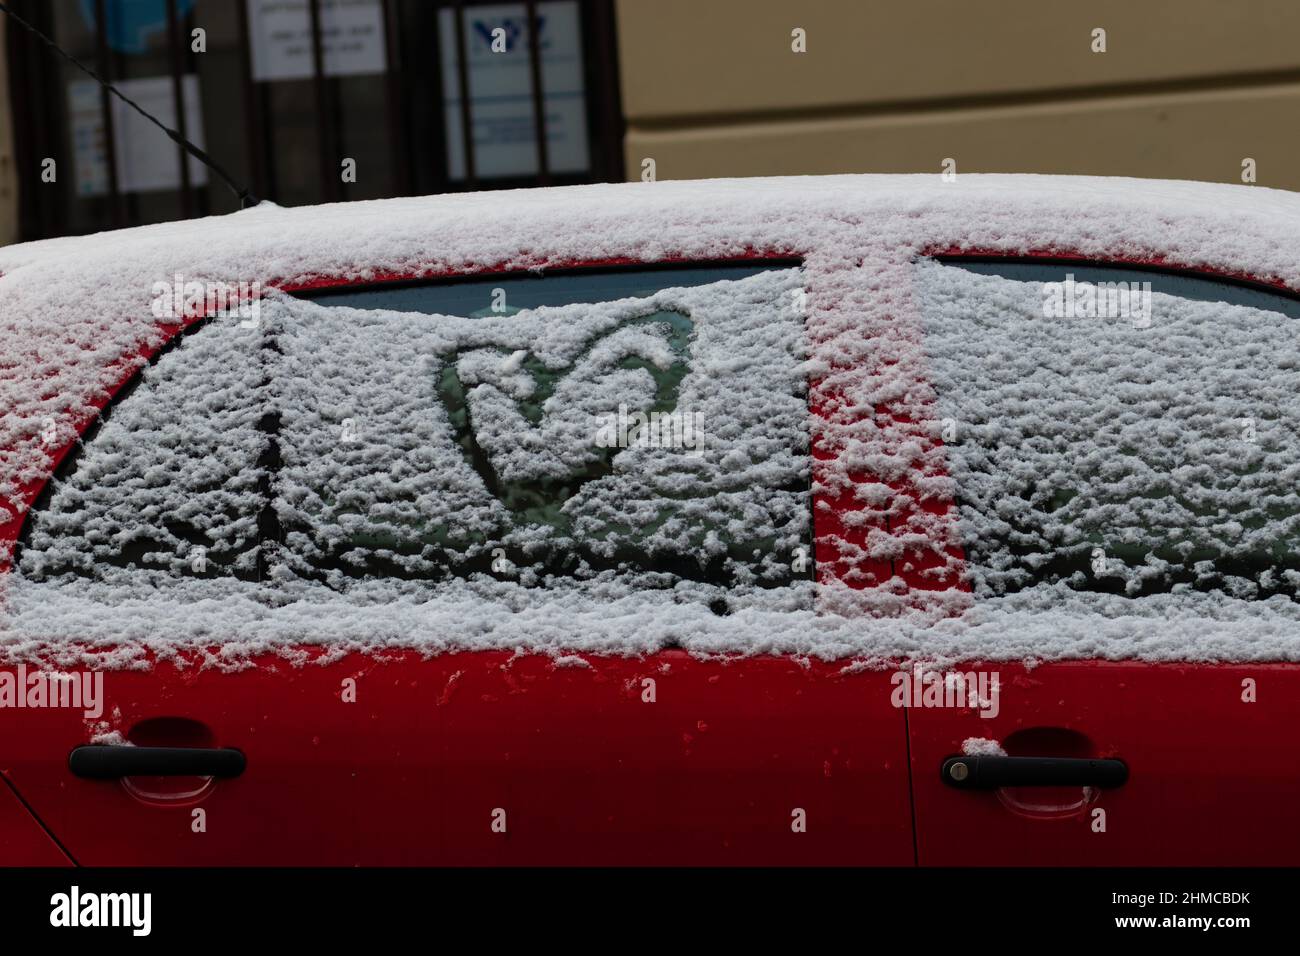 Un coeur peint par la neige, sur la fenêtre d'une voiture rouge recouverte de neige Banque D'Images